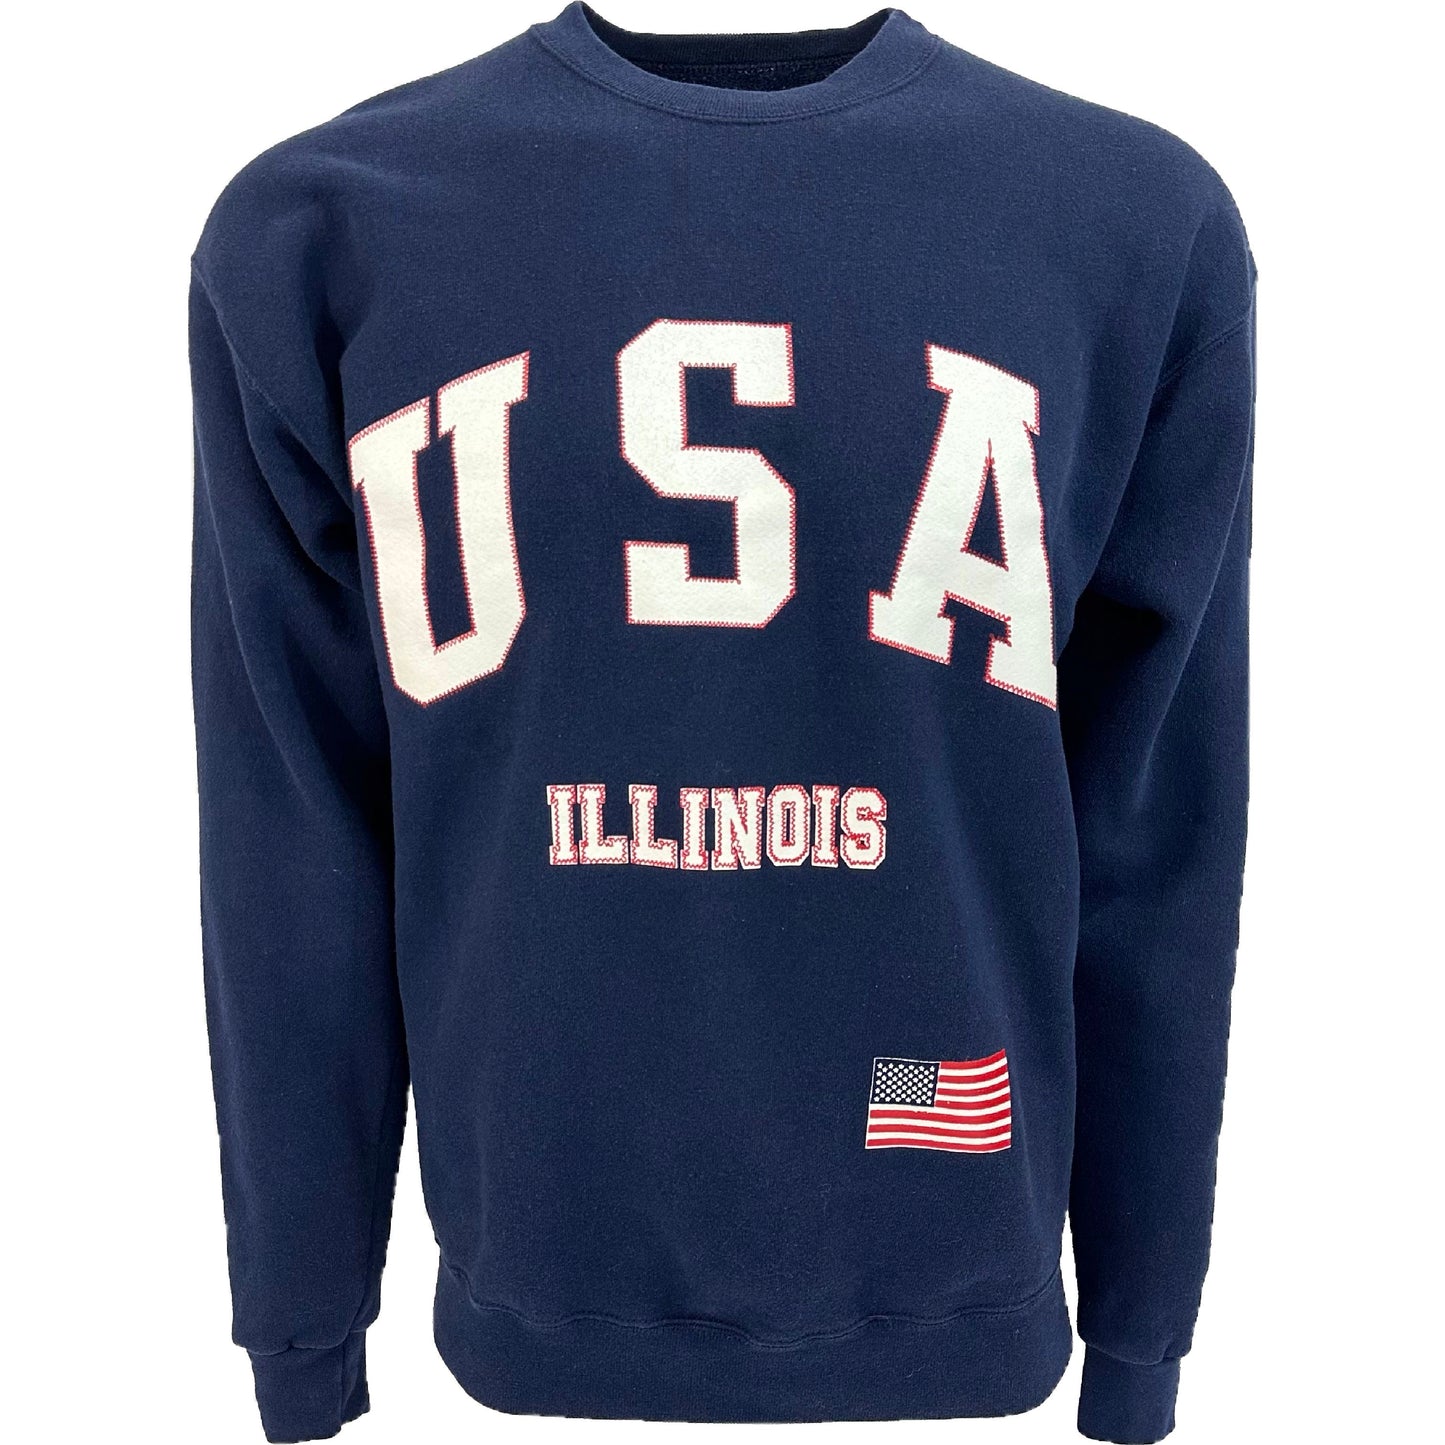 Vintage USA Illinois Crewneck Sweater